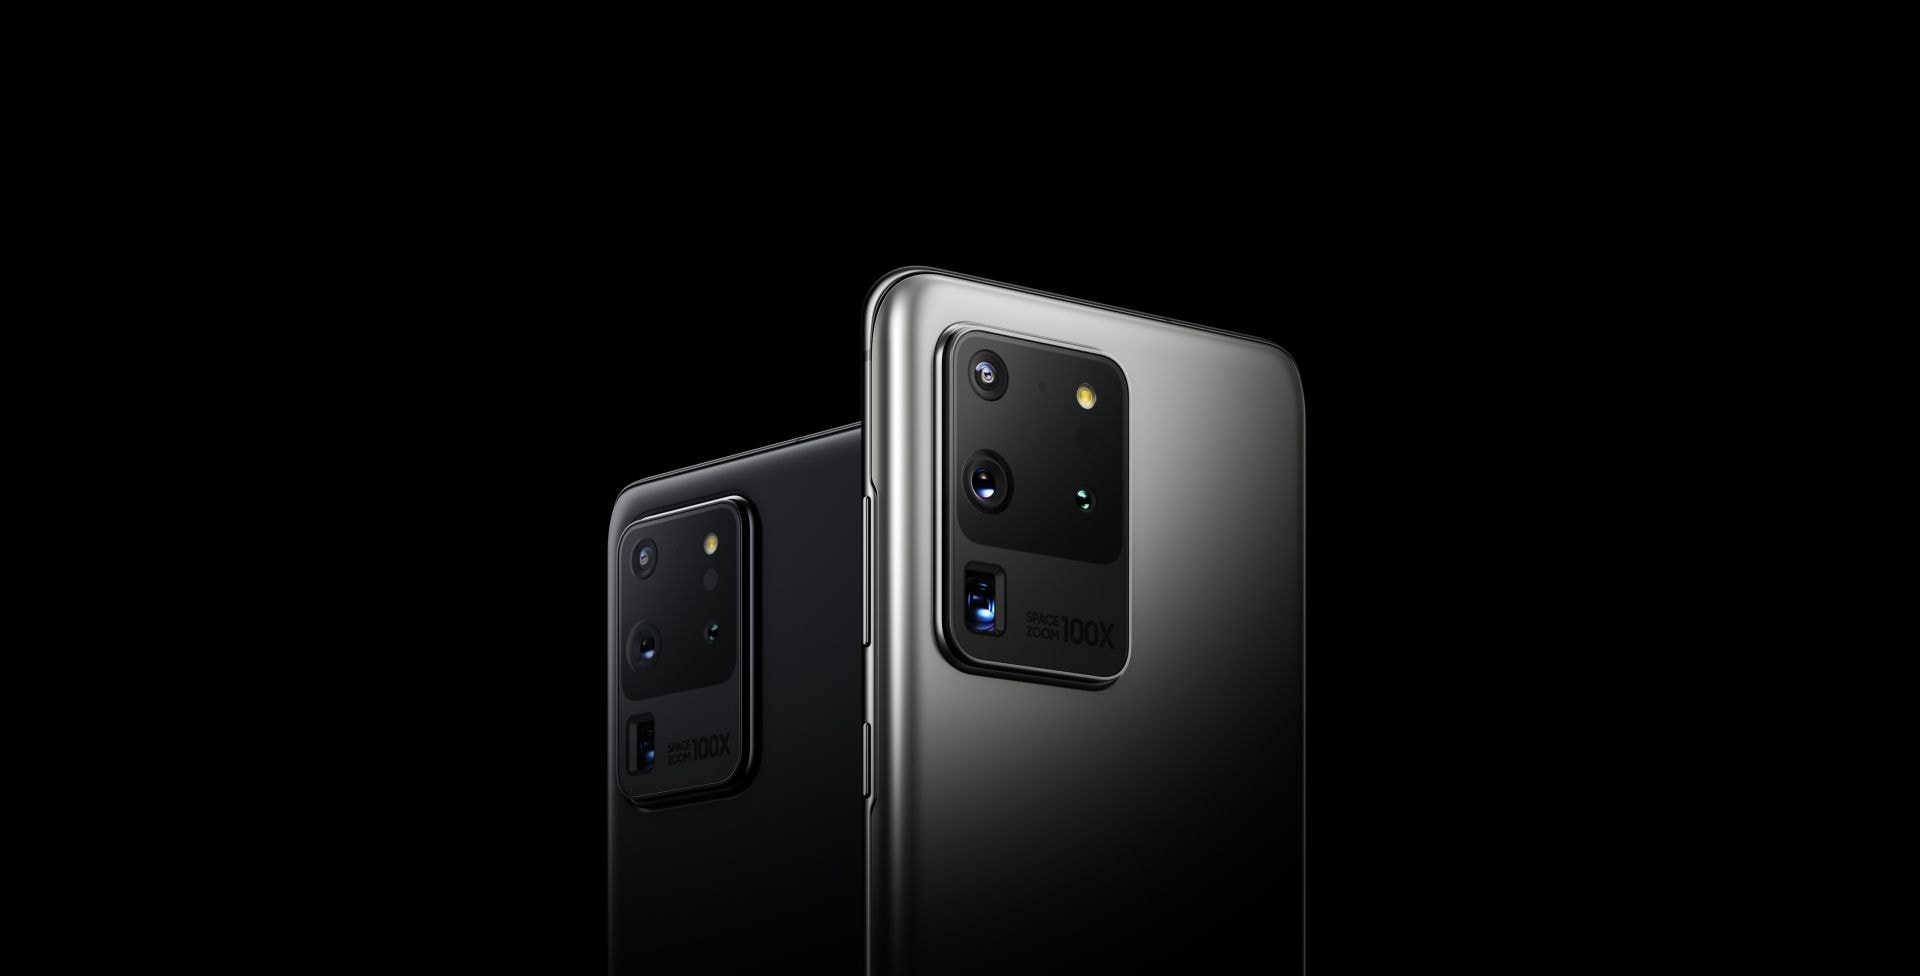 Zwei Galaxy S20 Ultra Smartphones, das eine in Cosmic Black und das andere in Cosmic Gray, von der Rückseite aus in einem Dreiviertel-Winkel dargestellt. Sie bewegen sich aufeinander zu, und eines verschwindet hinter dem anderen, sodass eines direkt von hinten zu sehen ist. Es erfolgt eine Überlagerung mit Weiß, bis nur noch die Vierfach-Hauptkamera zu sehen ist.